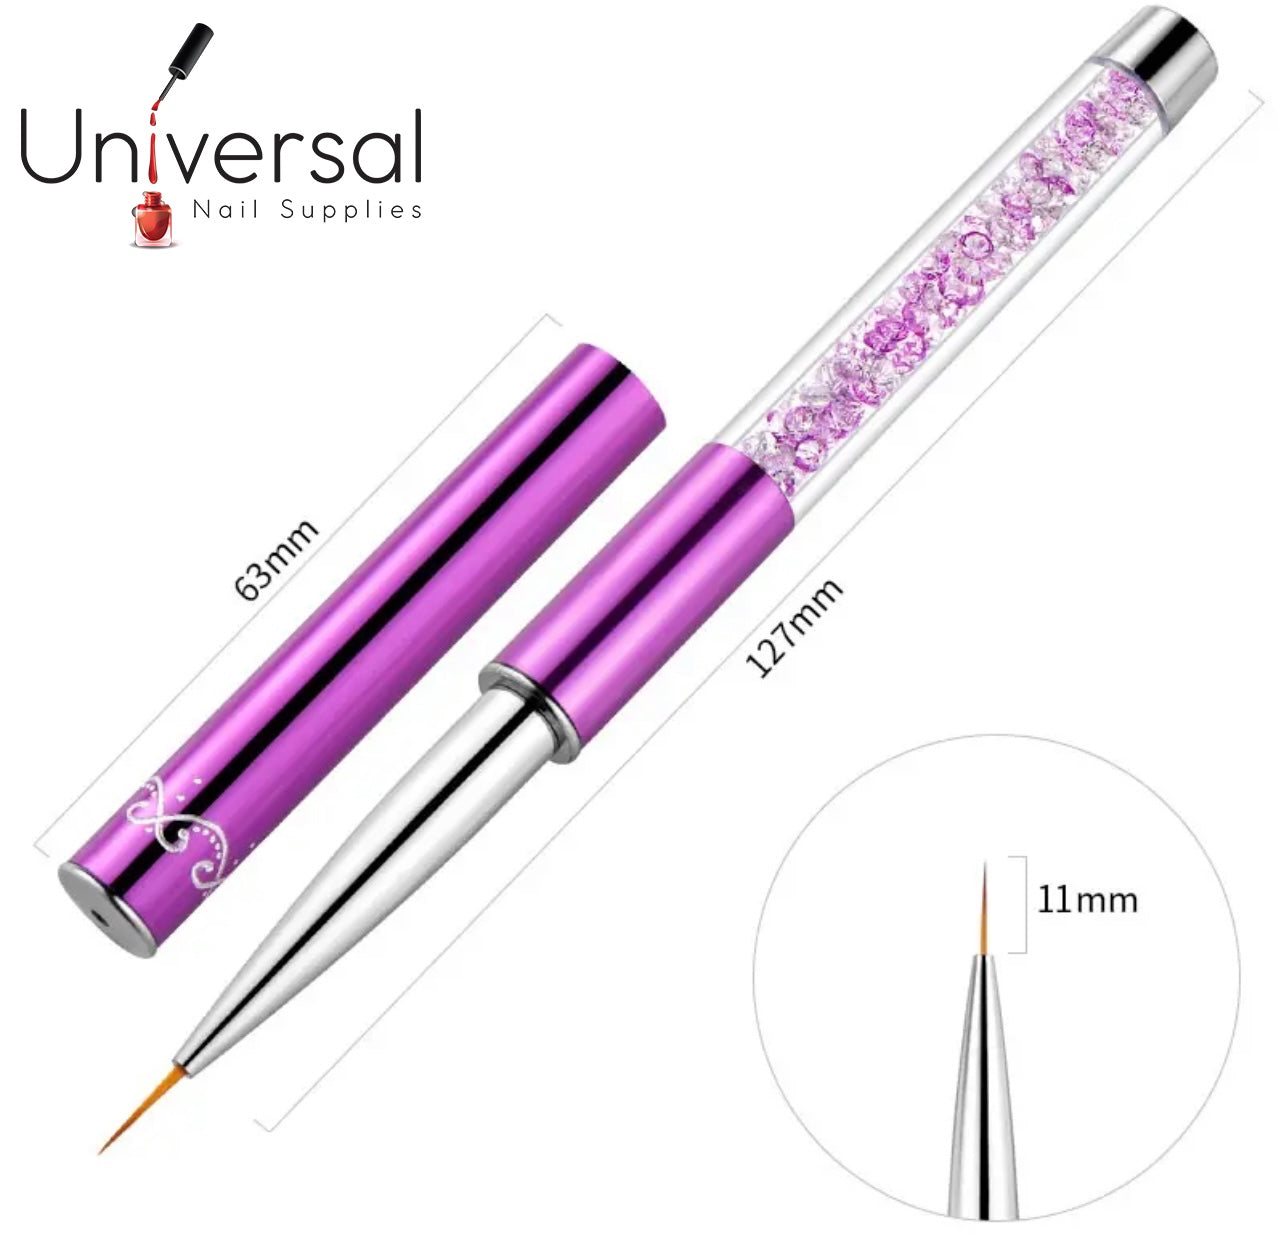 Sofi Nail Art Brush Drawing Painting Pen - Universal Nail Supplies